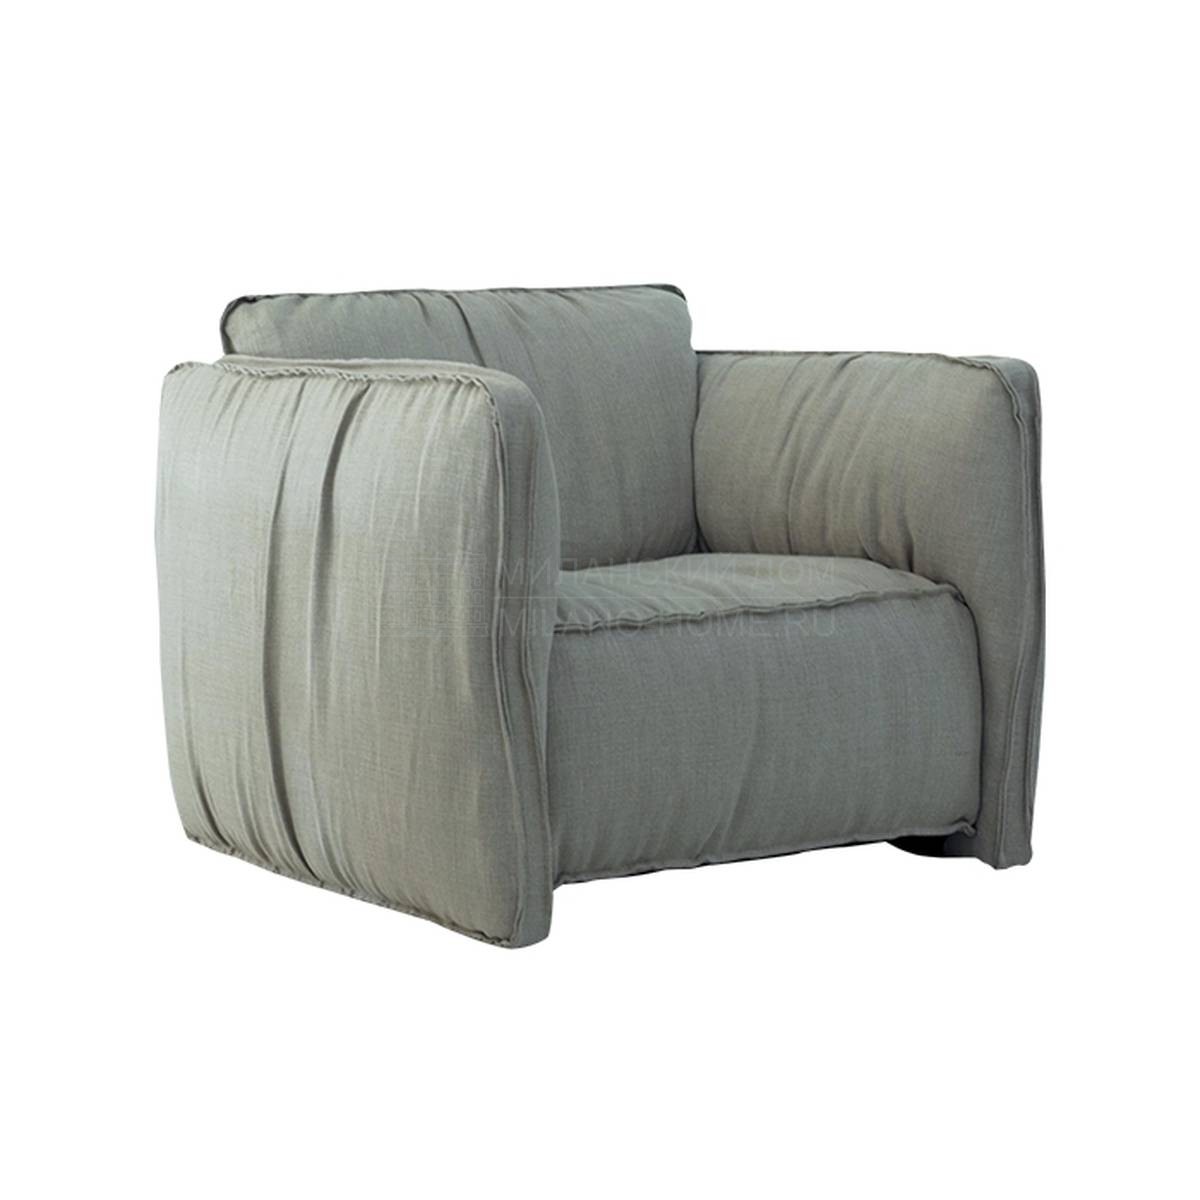 Кресло Fluon armchair из Италии фабрики PAOLO CASTELLI